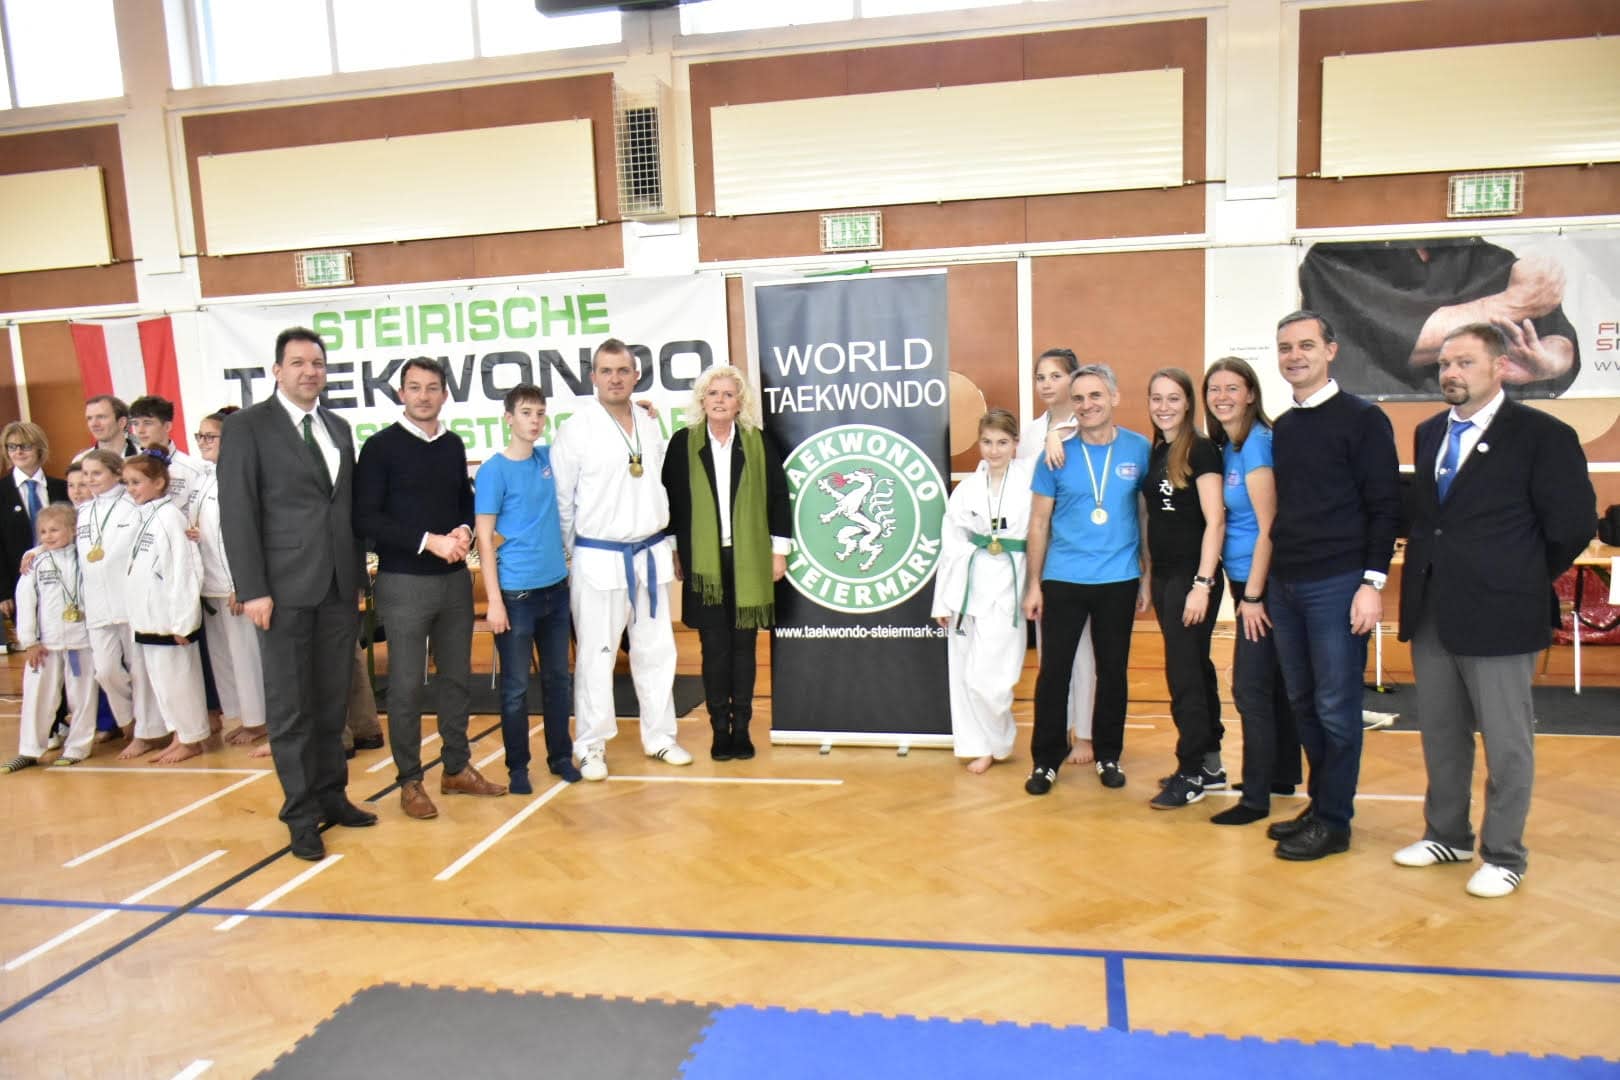 Die Kärntner holten sich gleich viermal Gold bei den Steirischen Taekwondo Landesmeisterschaften.